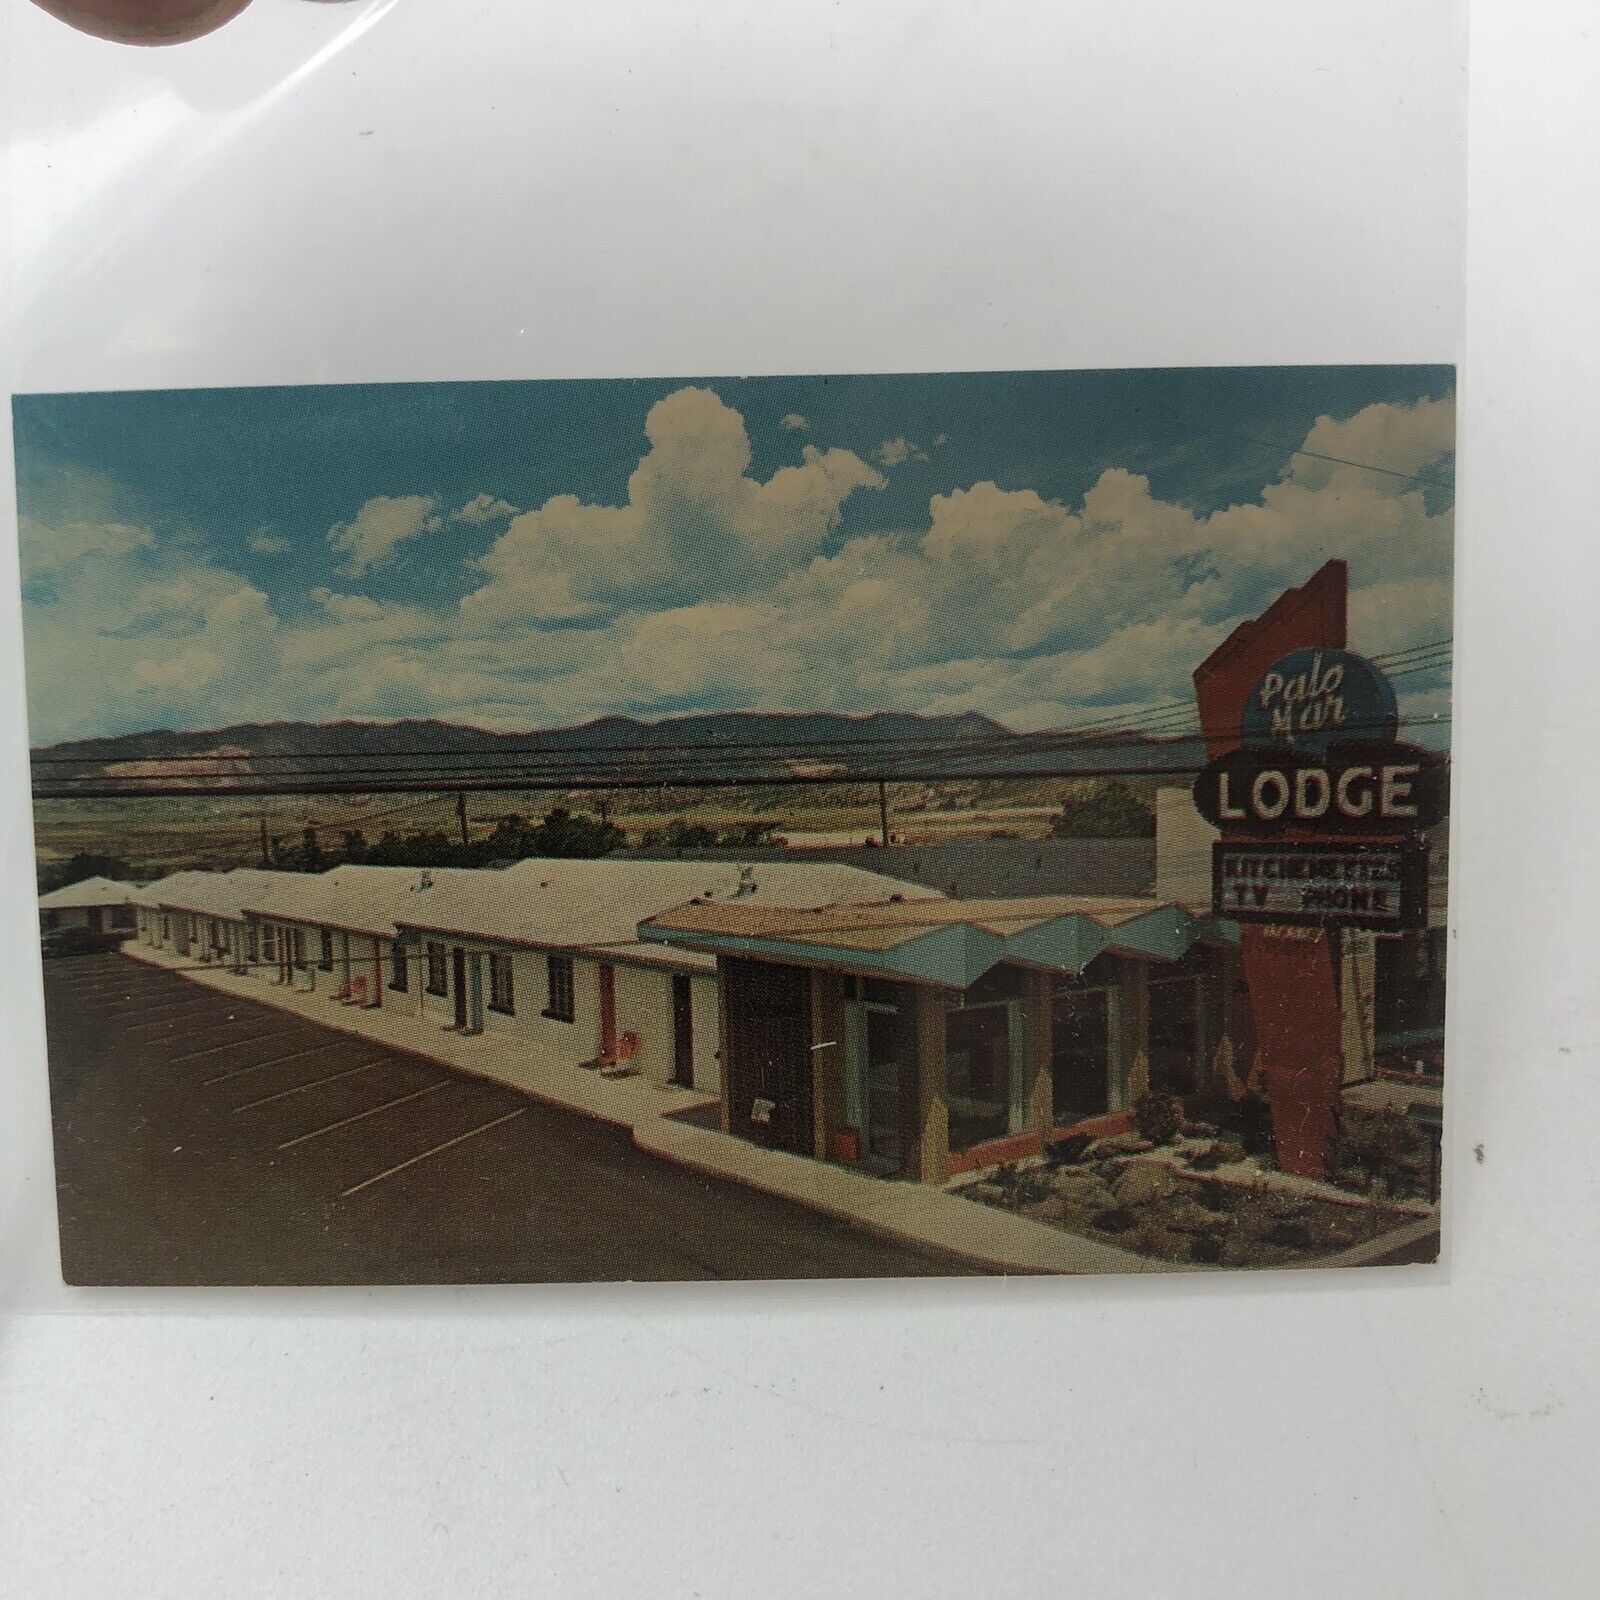 Palomar Motel Colorado Springs Business Card Vintage Advertising Ephemera